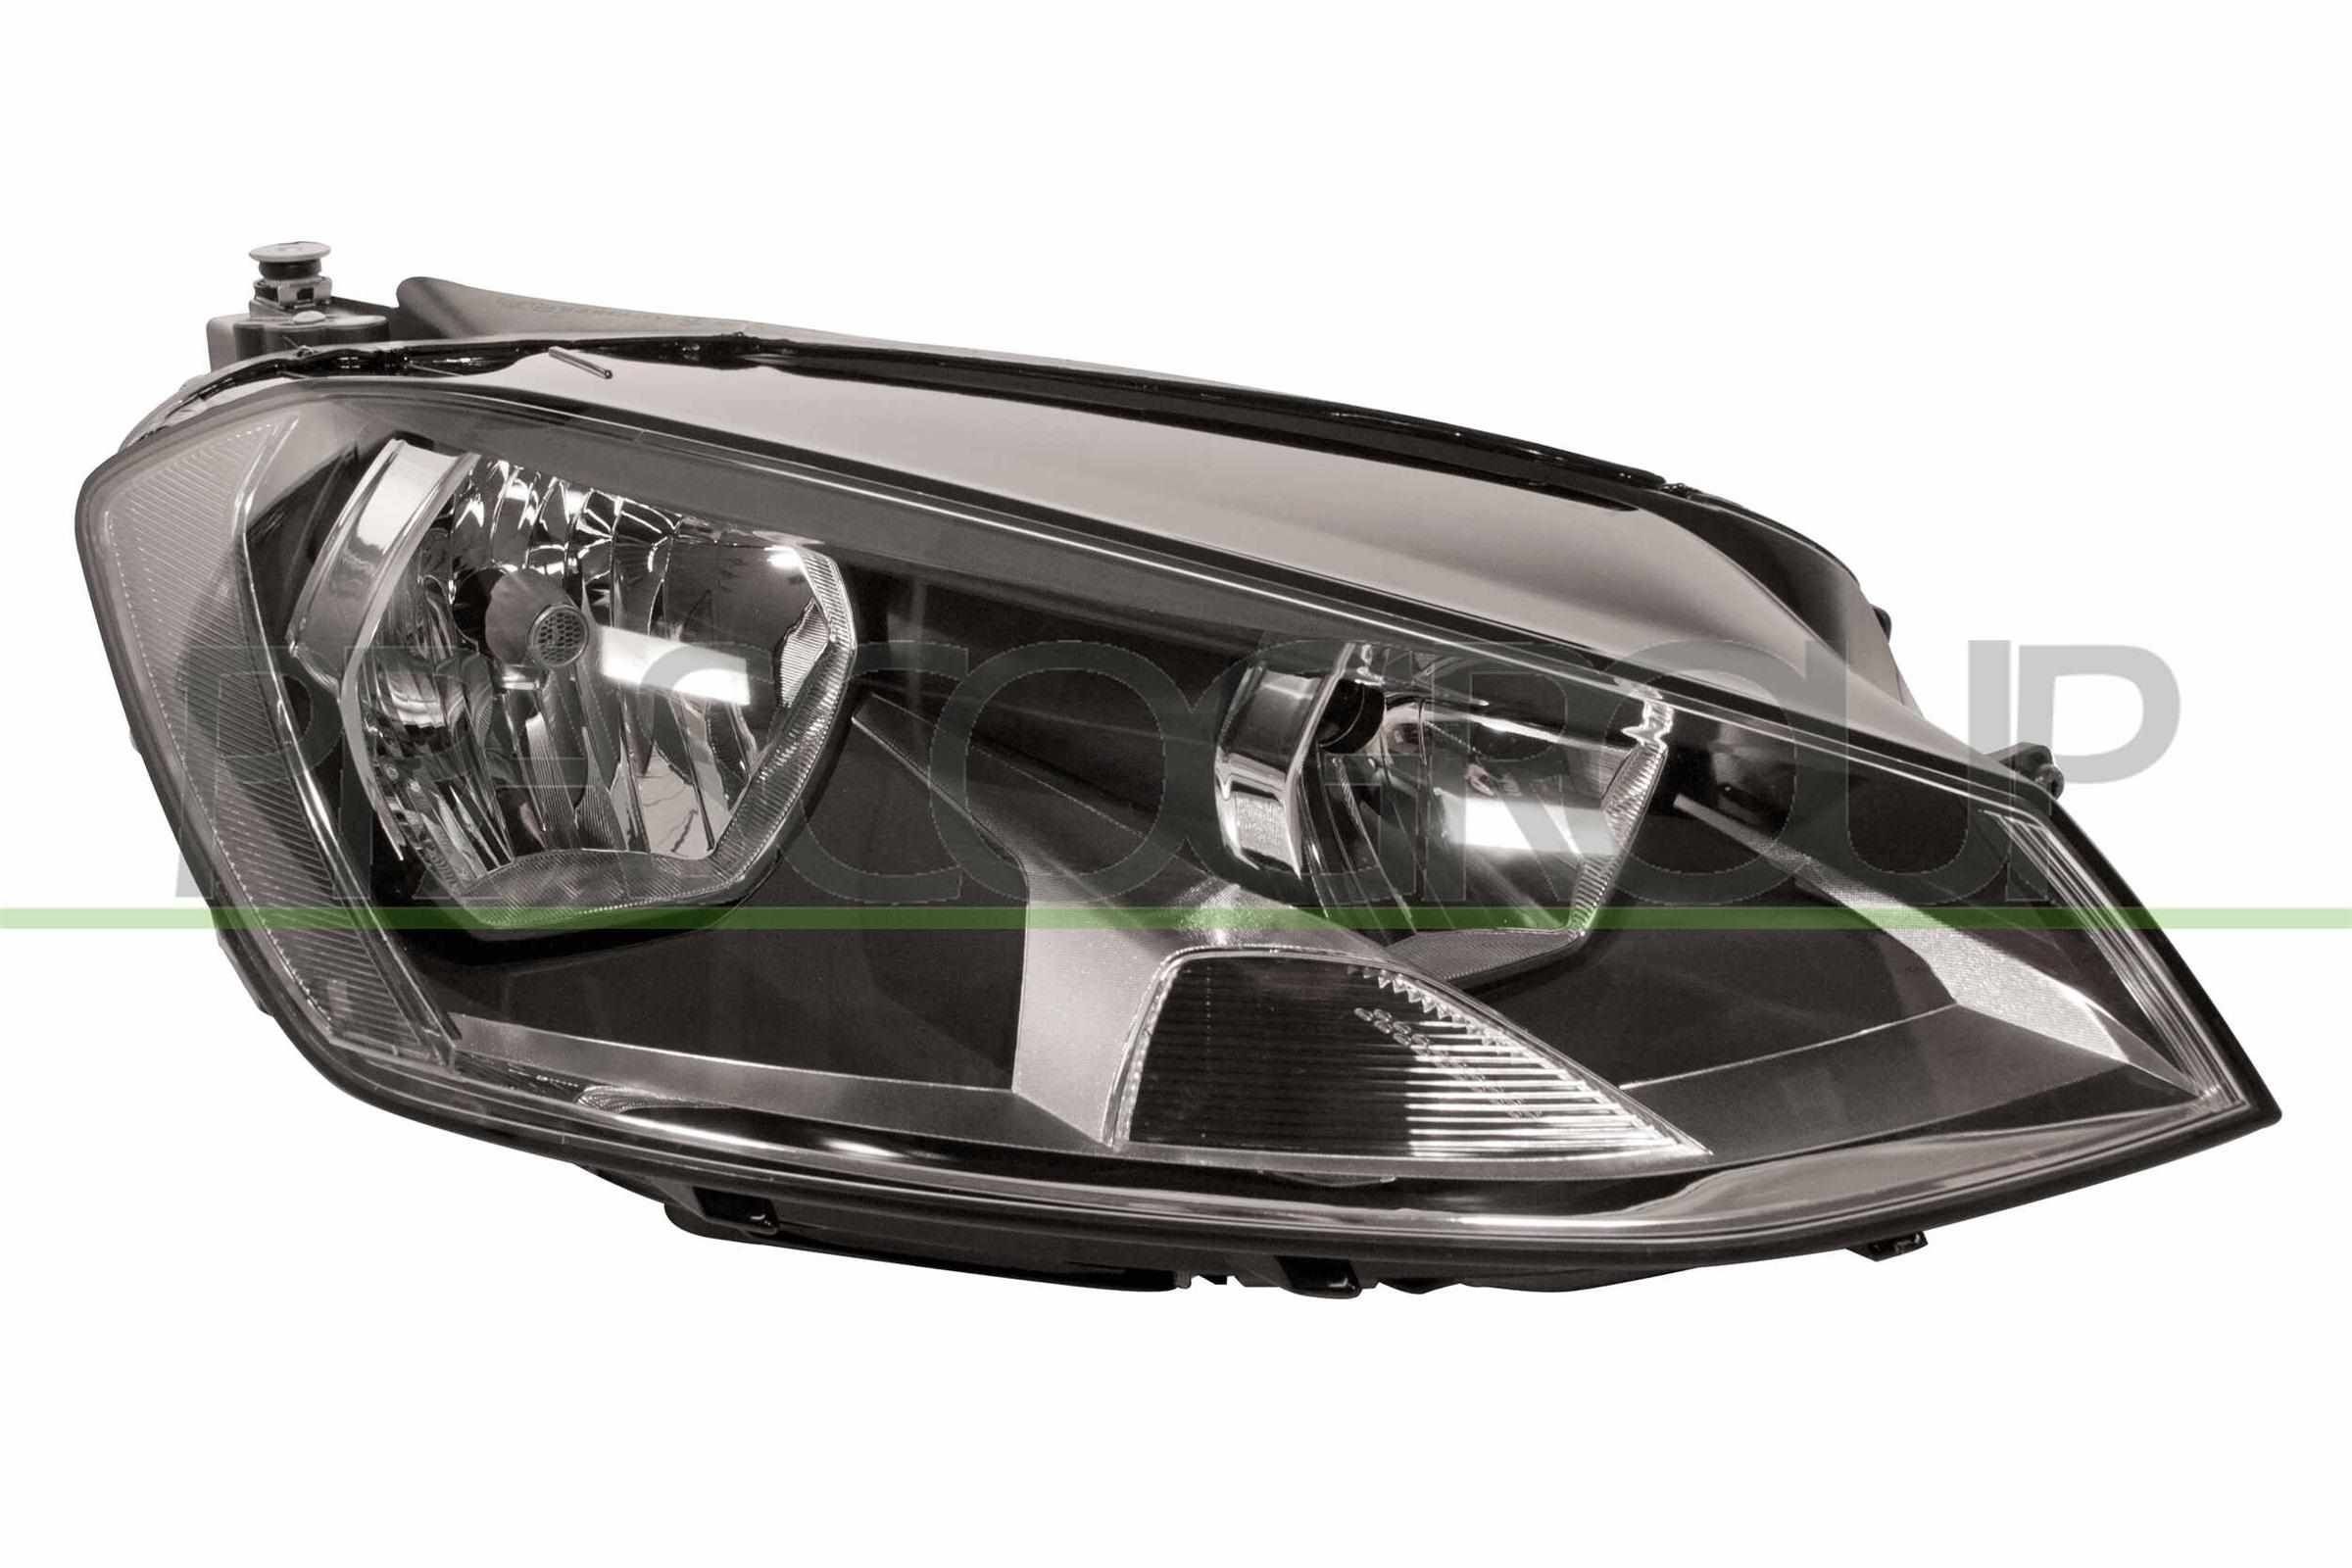 Abblendlicht-Glühlampe für Golf 7 Variant LED und Xenon zum günstigen Preis  kaufen » Katalog online